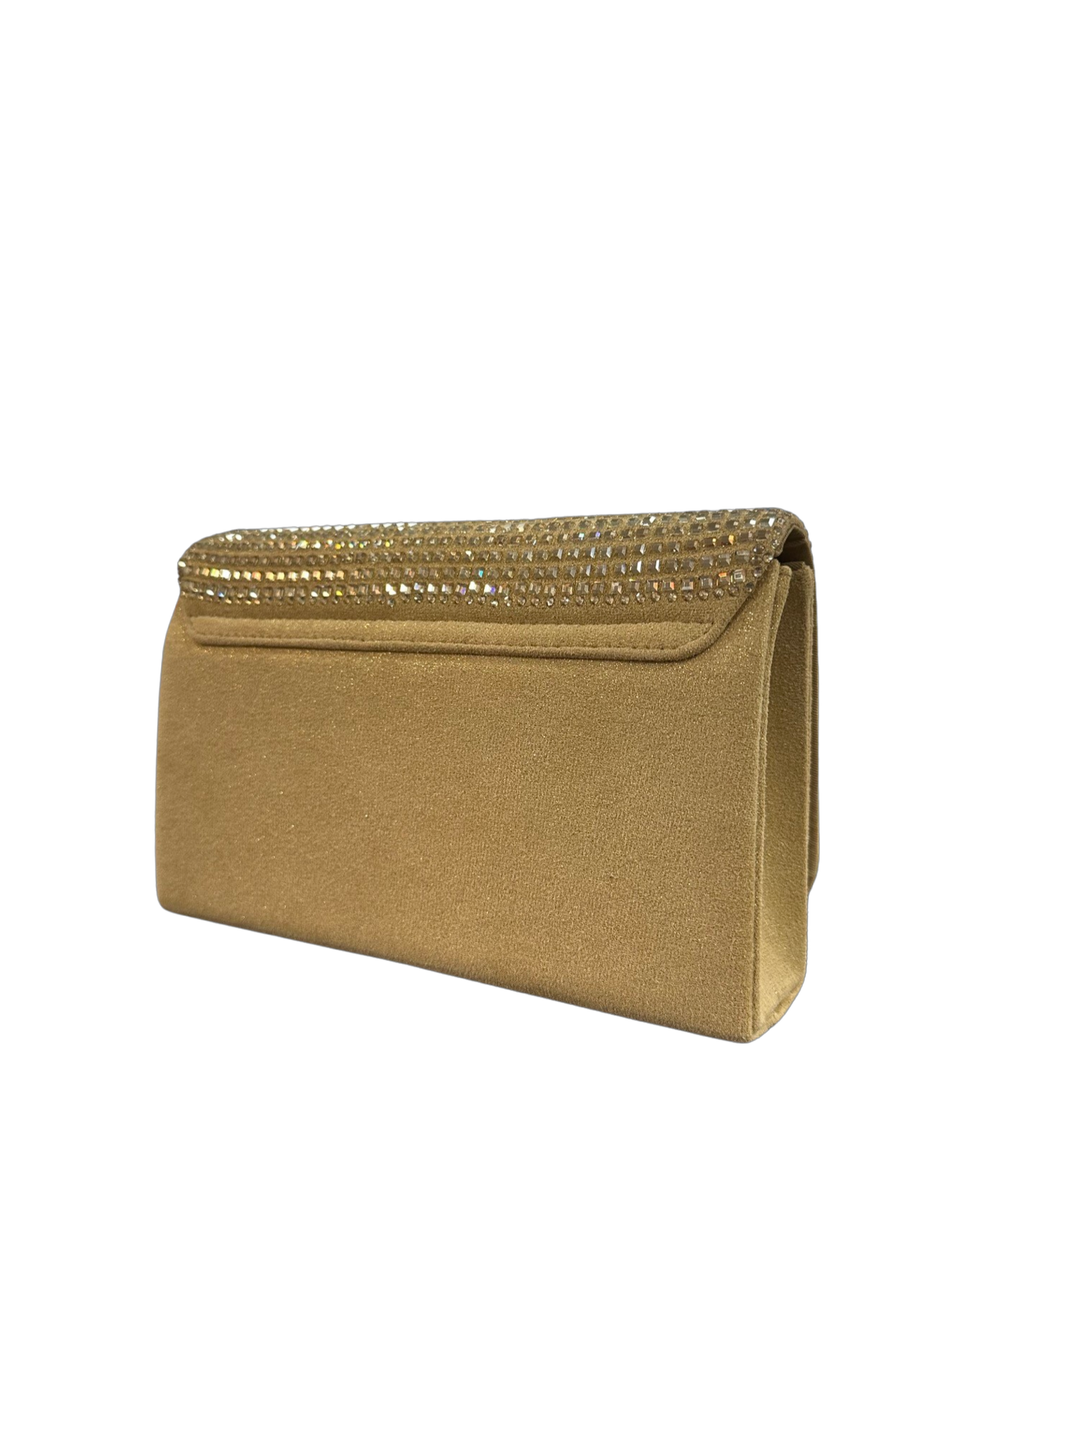 Menbur Gold Gem Clutch Bag